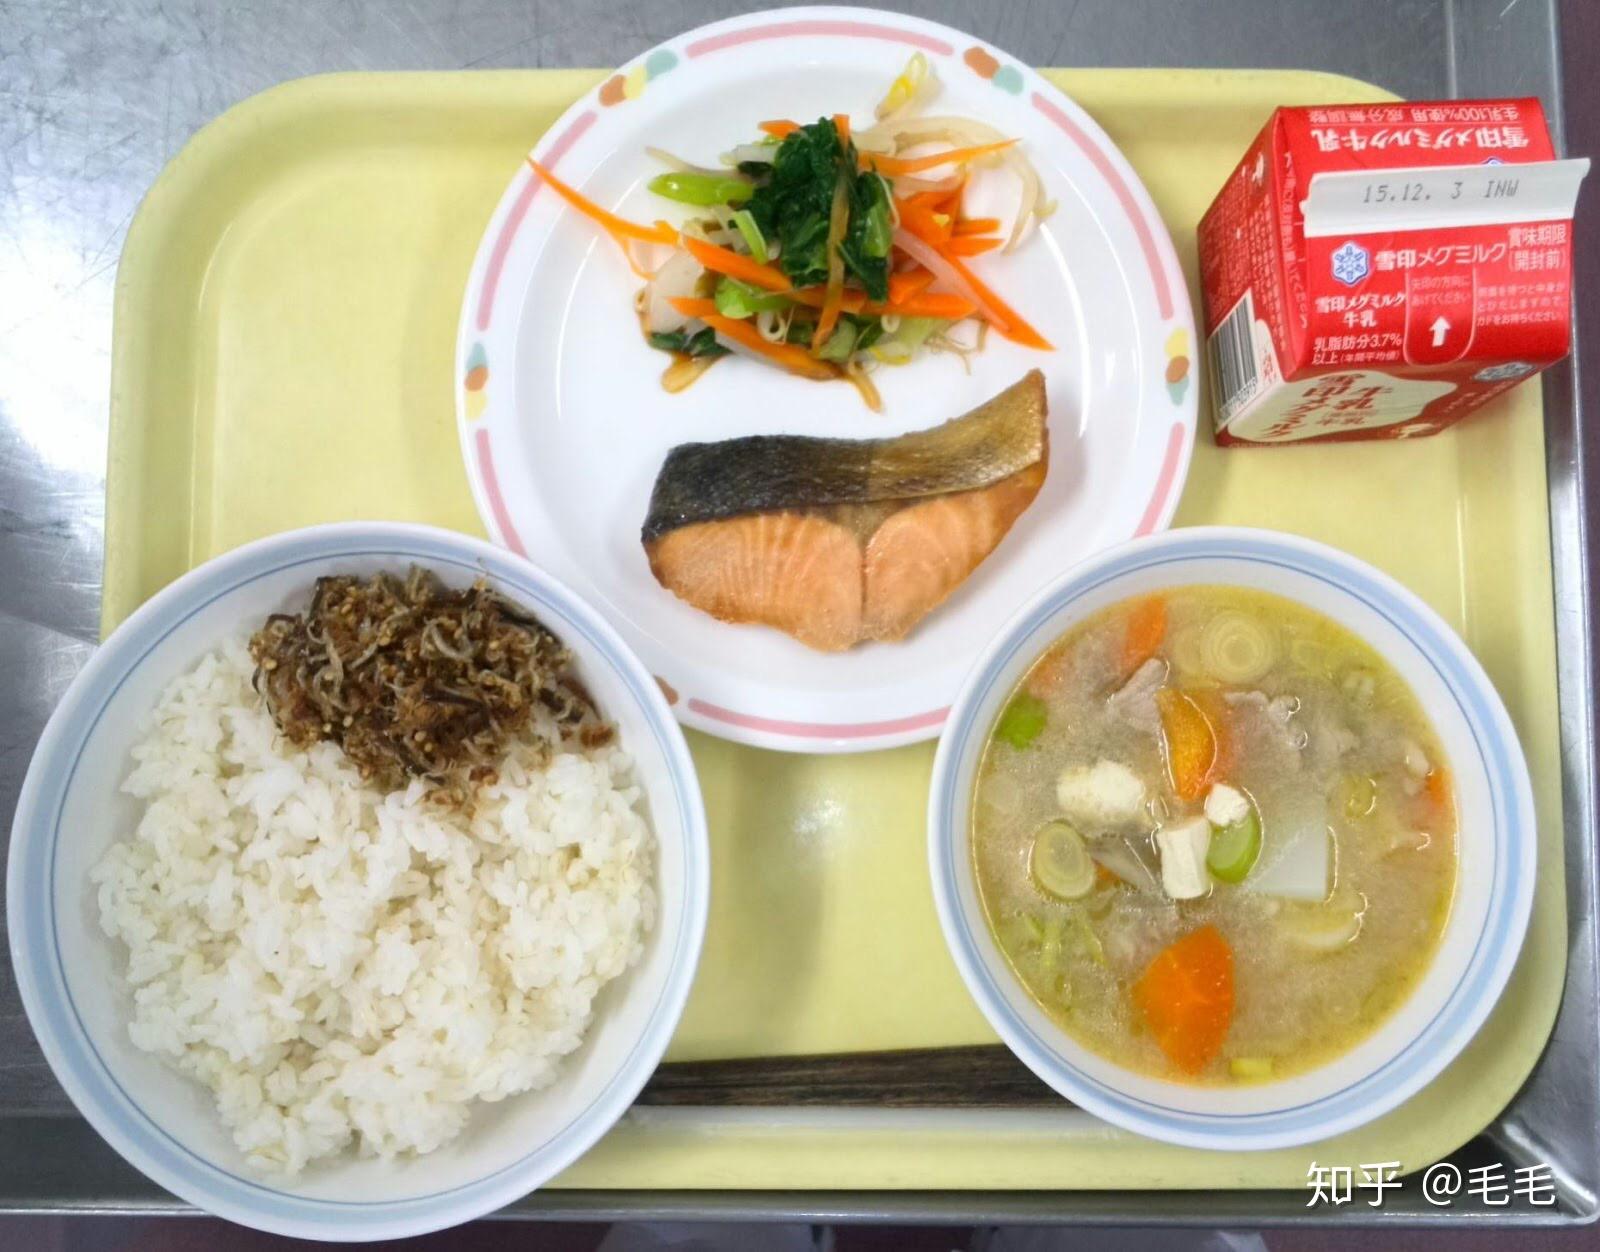 日本学生为什么都那么喜欢吃便当呢?学校没有